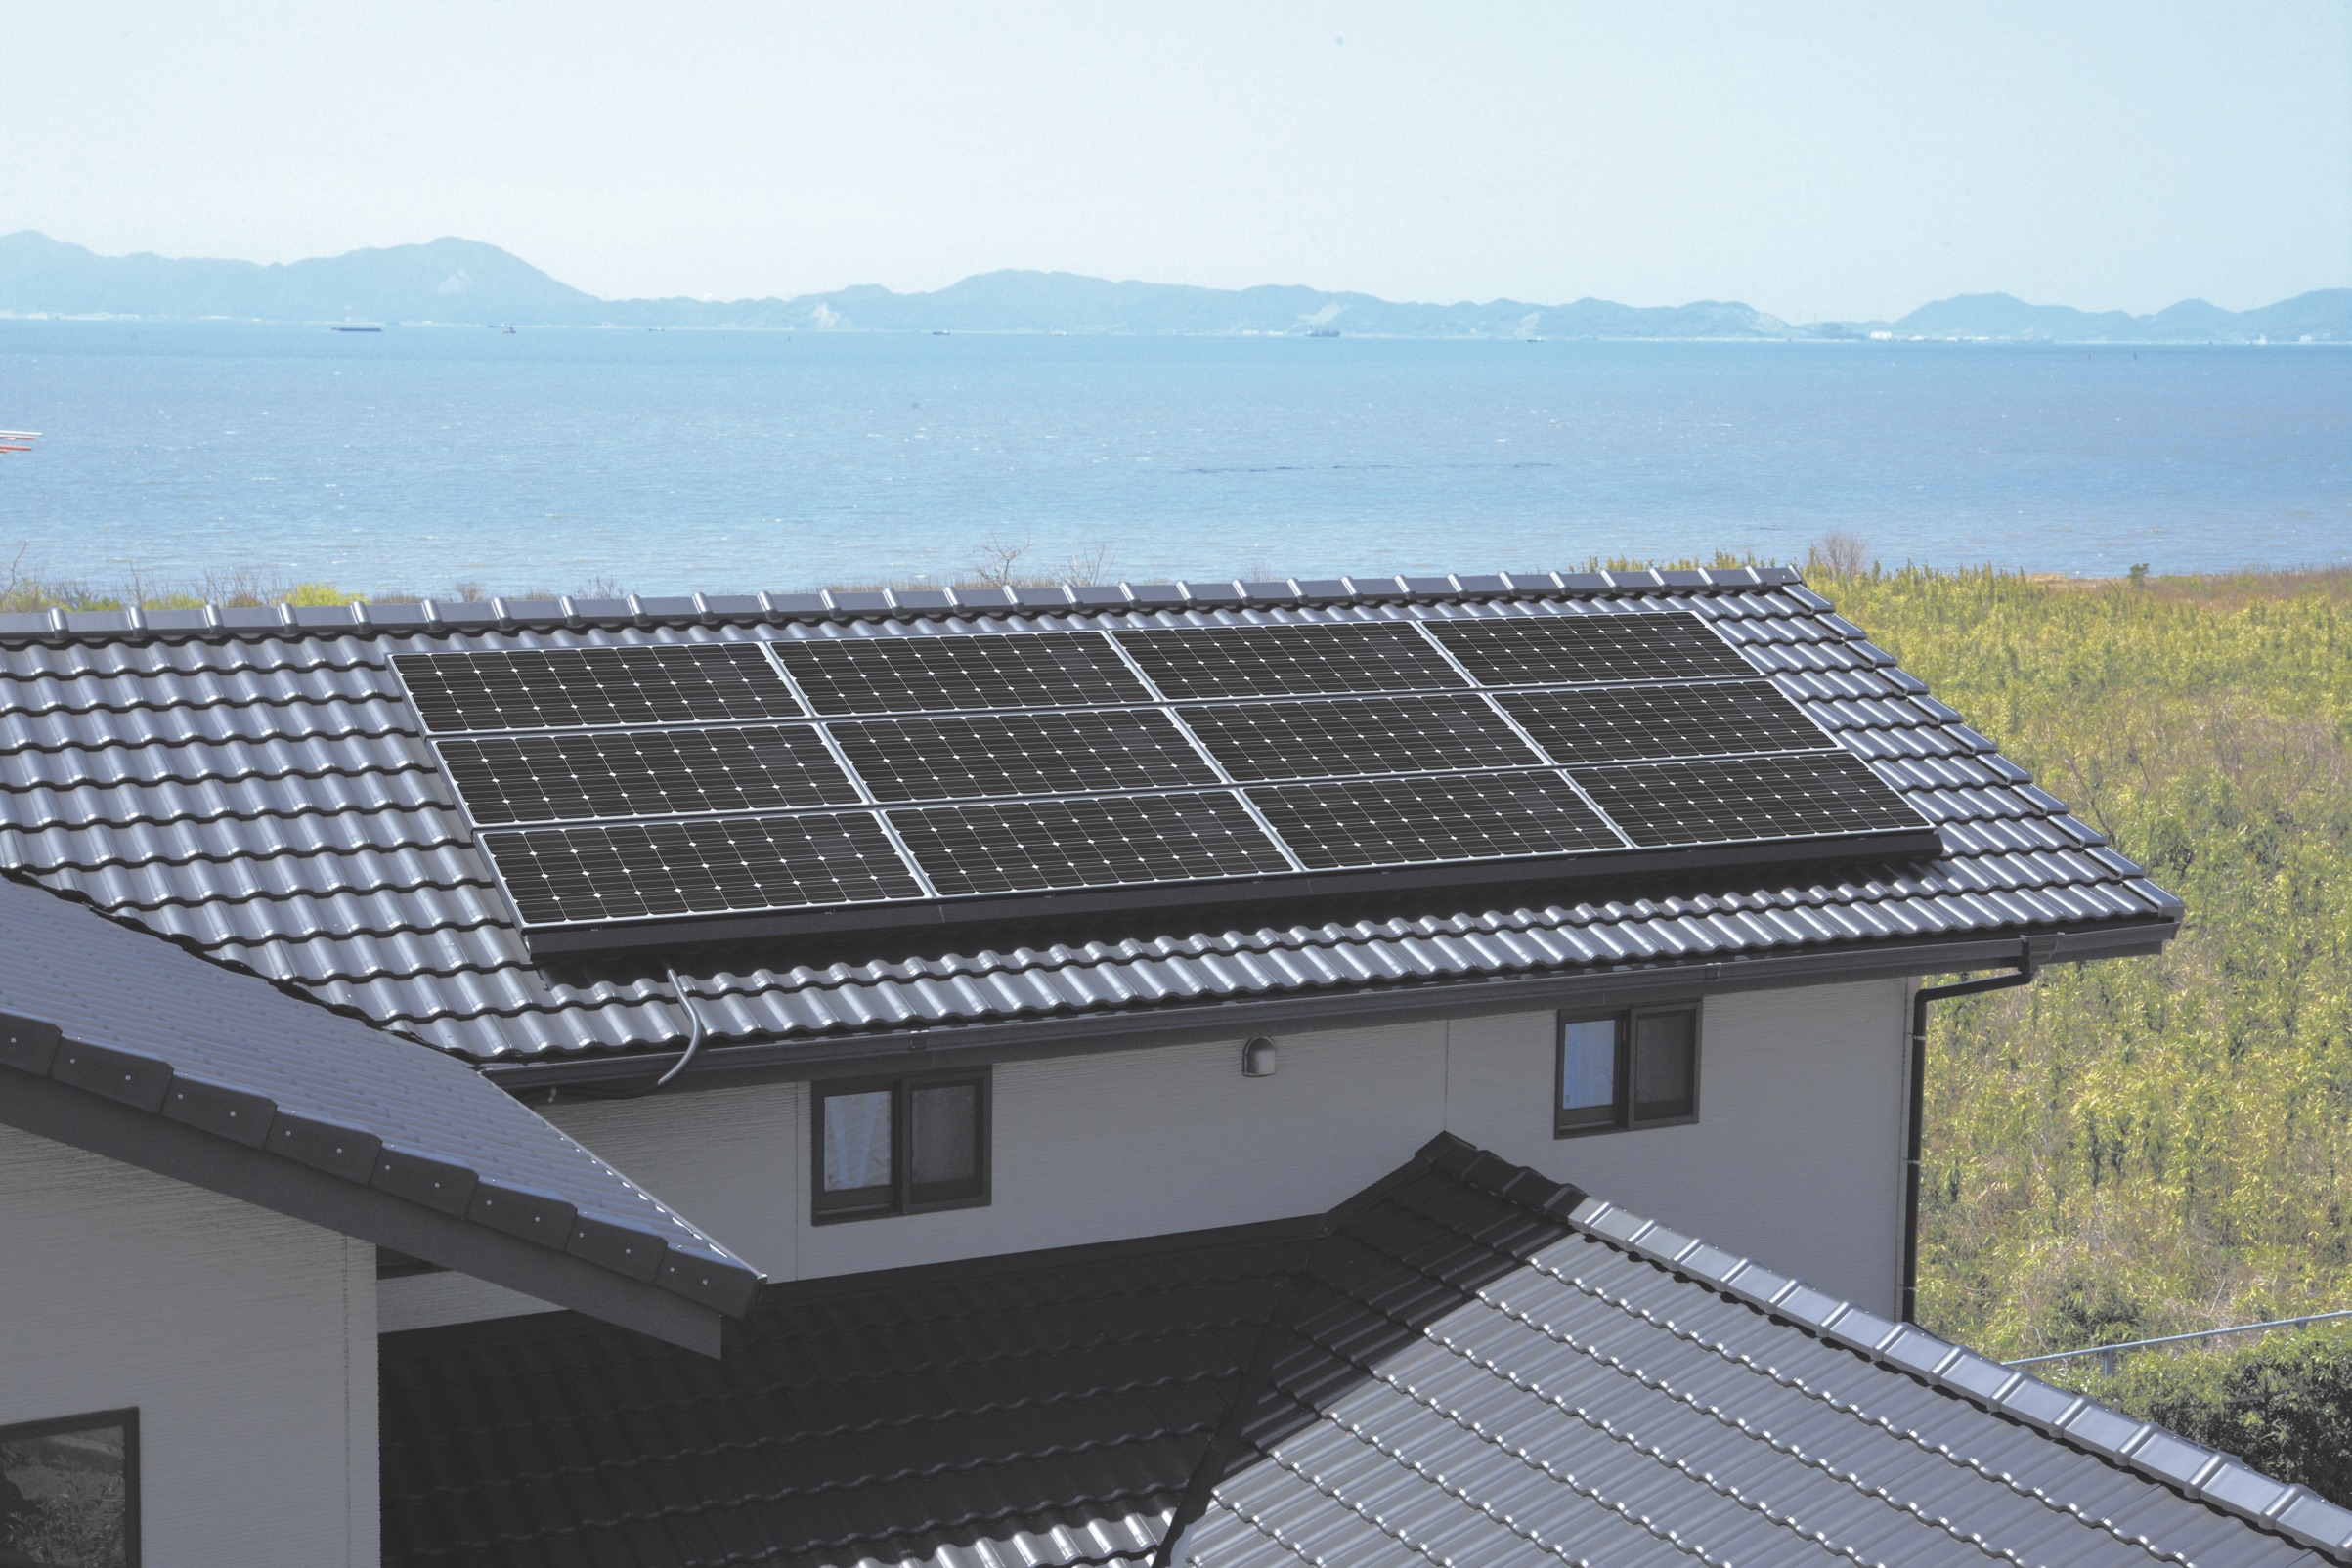 SALE／67%OFF】 某サイト30800円 震災時や屋外で ペーパー型太陽光パネル ソーラーパネル